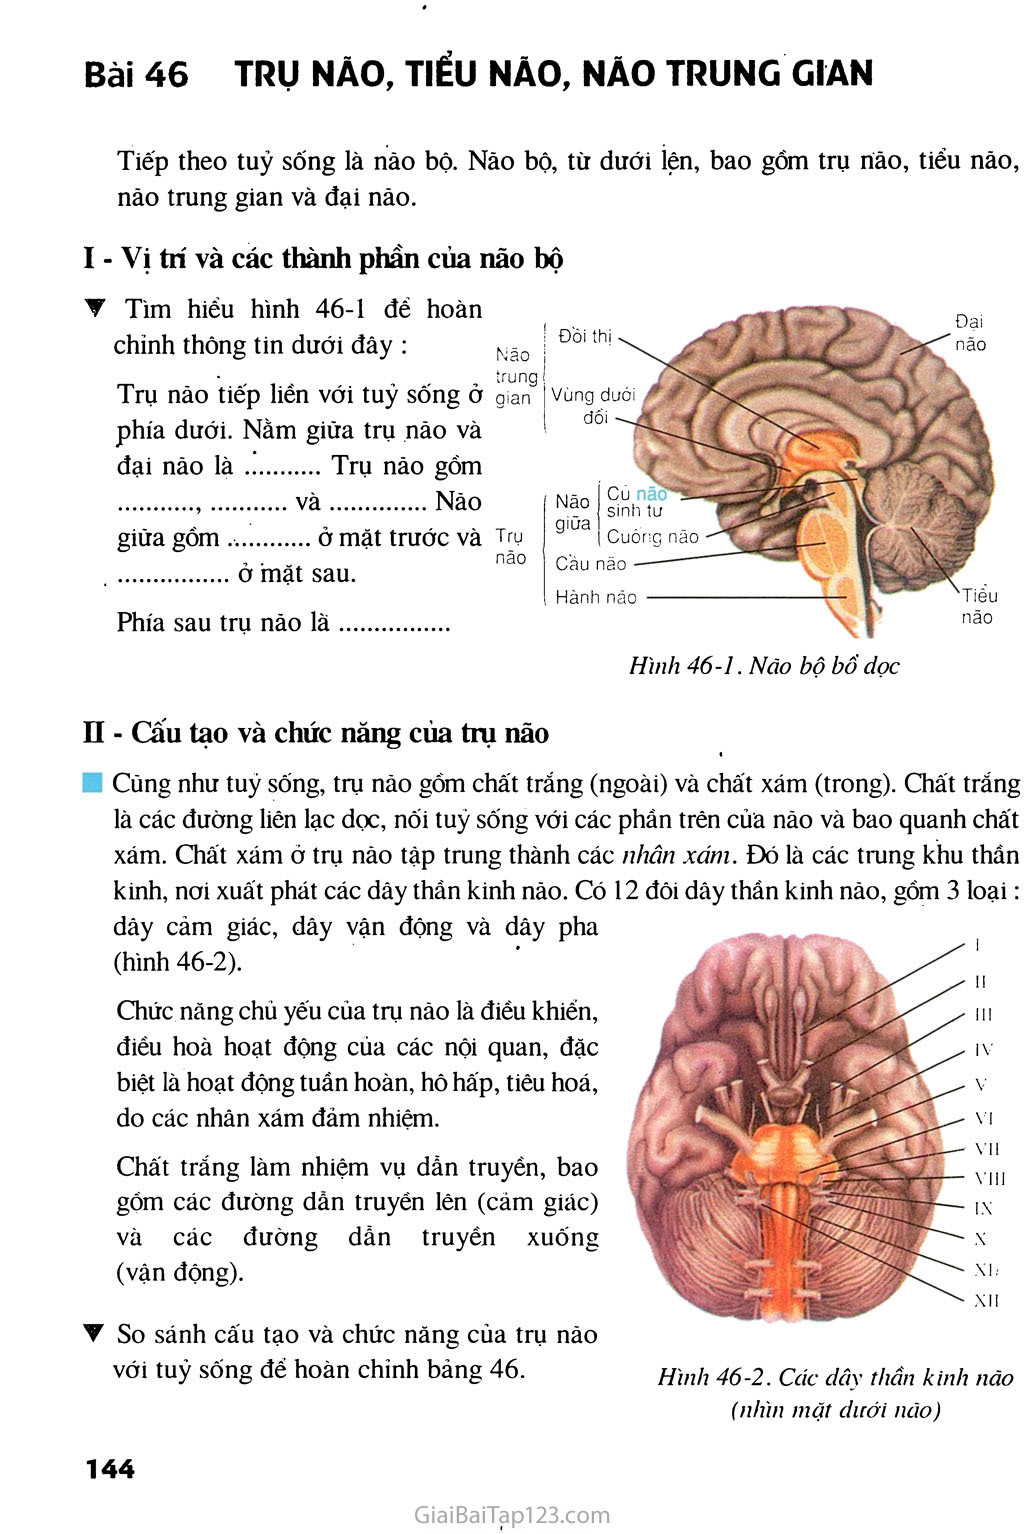 Bài 46. Trụ não, tiểu não, não trung gian trang 1